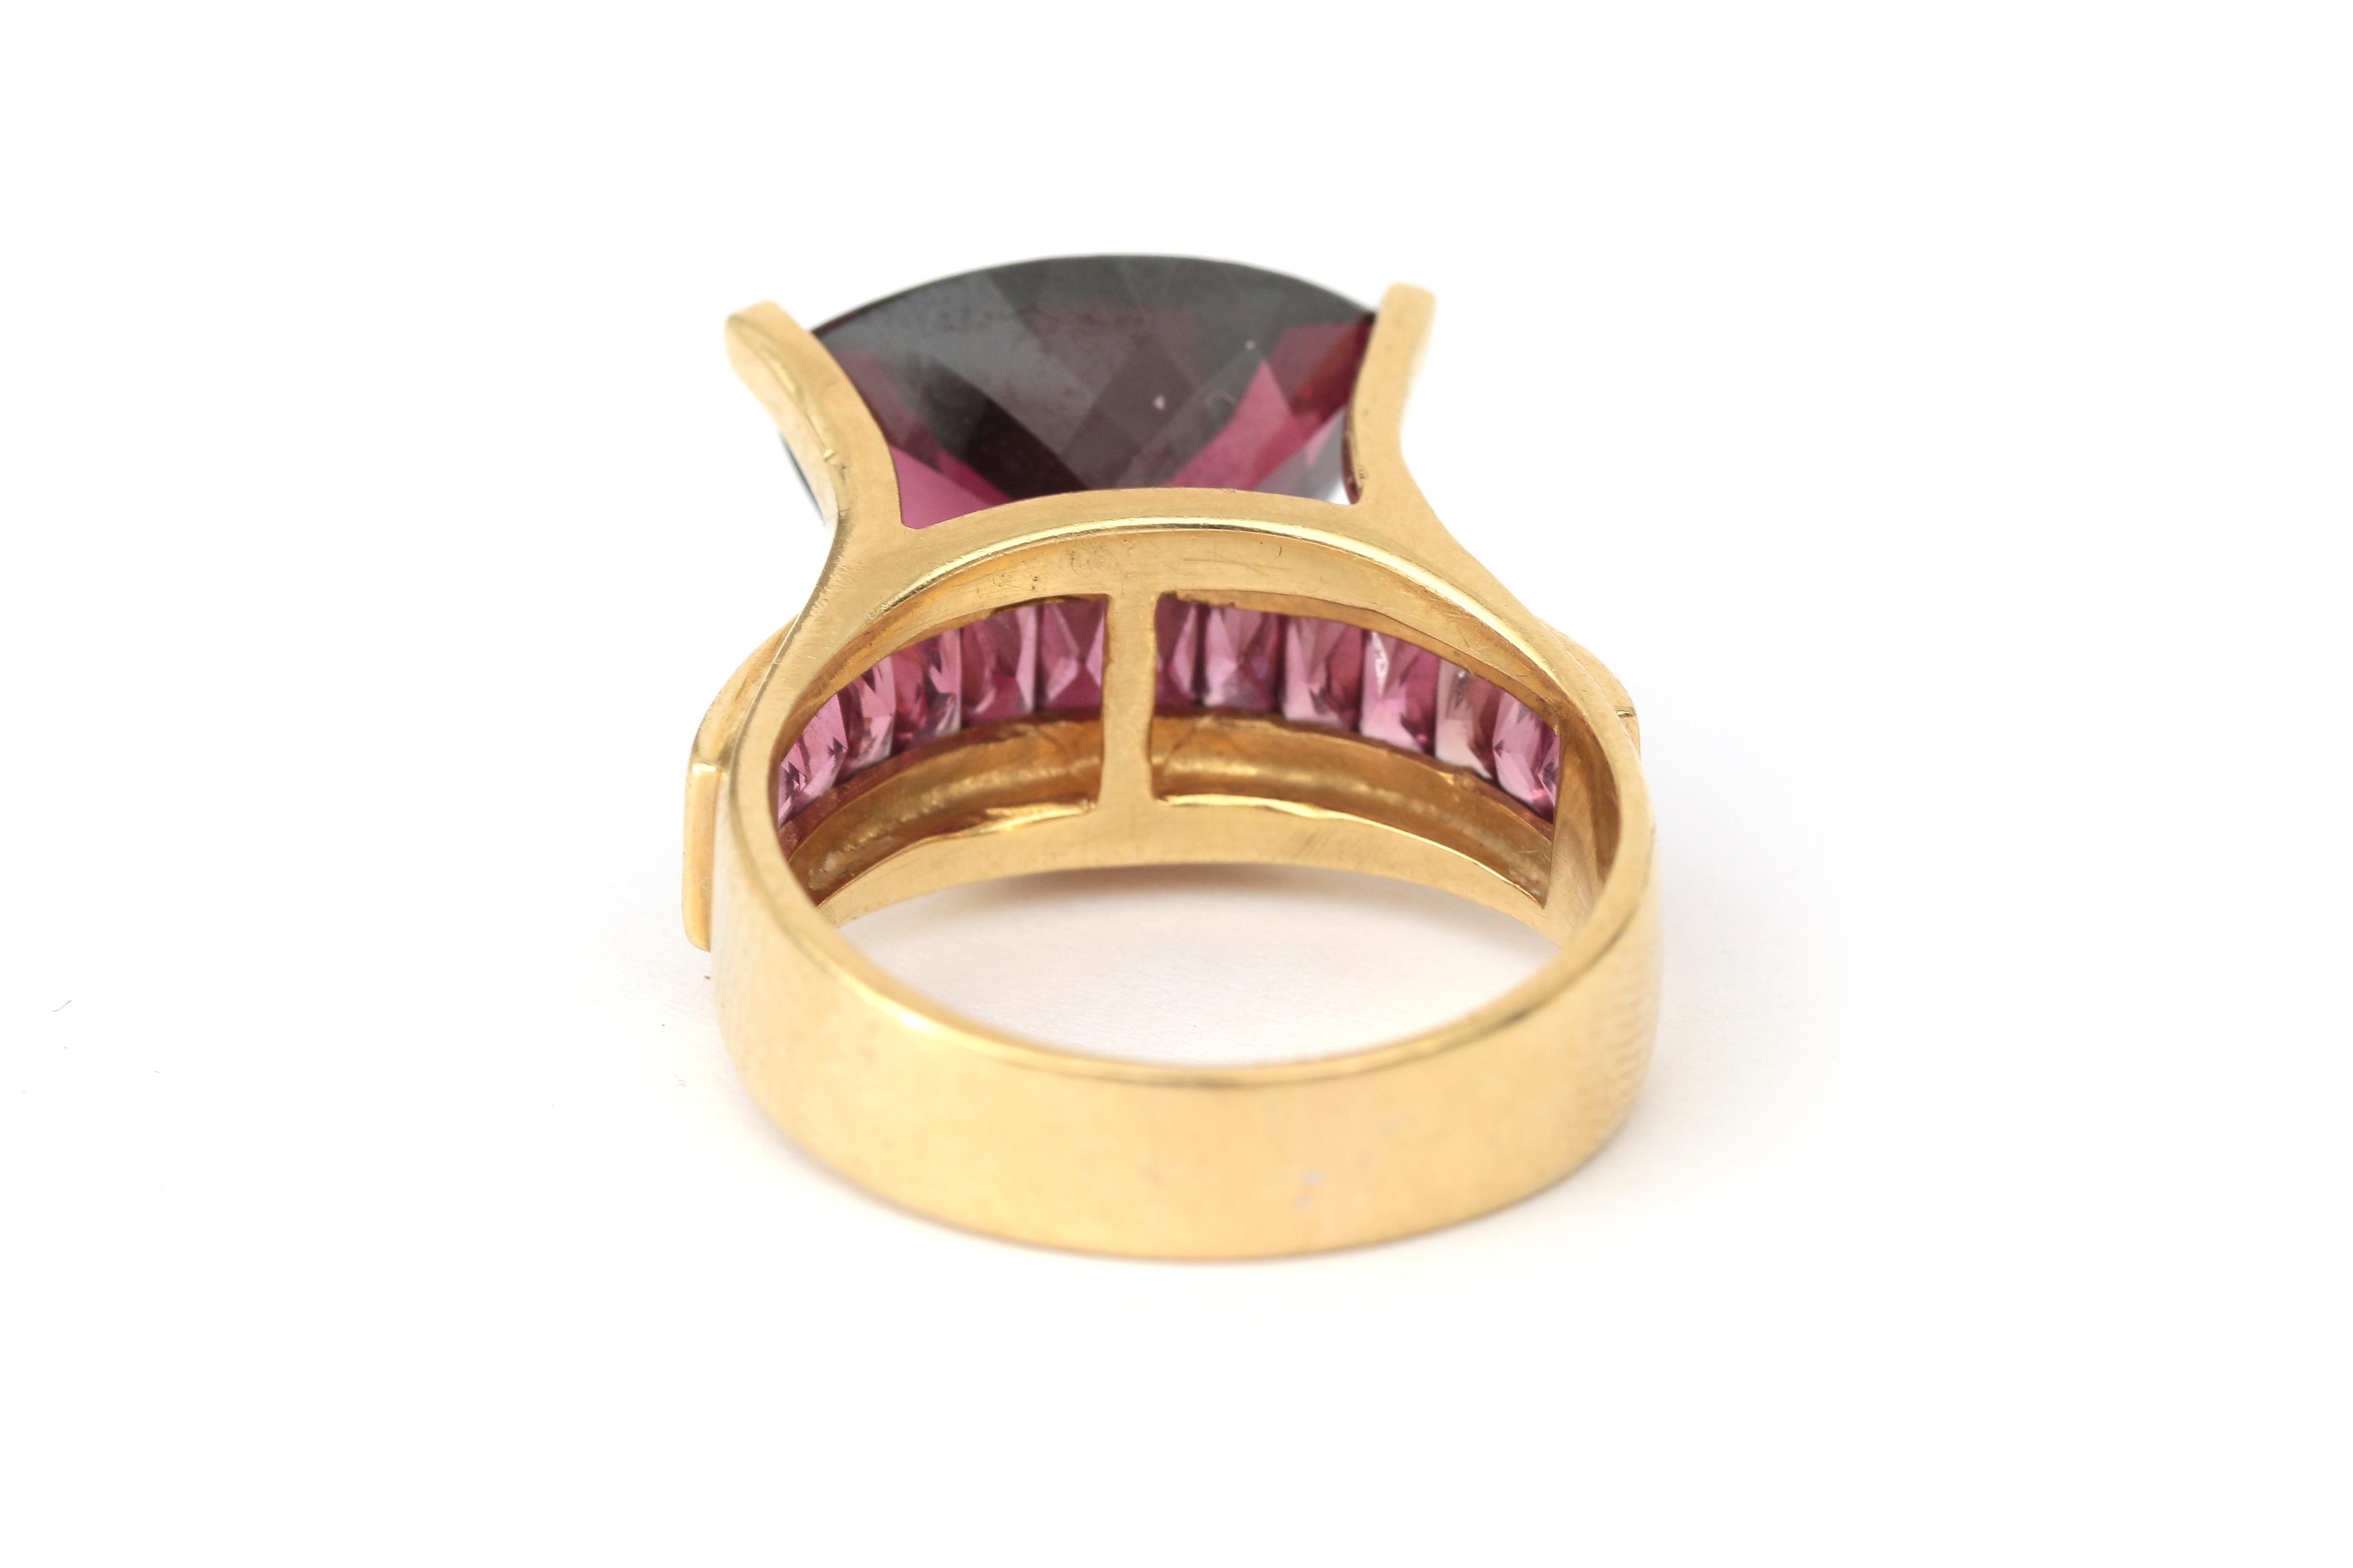 An 18 karat gold rubelite tourmaline ring - Image 3 of 4